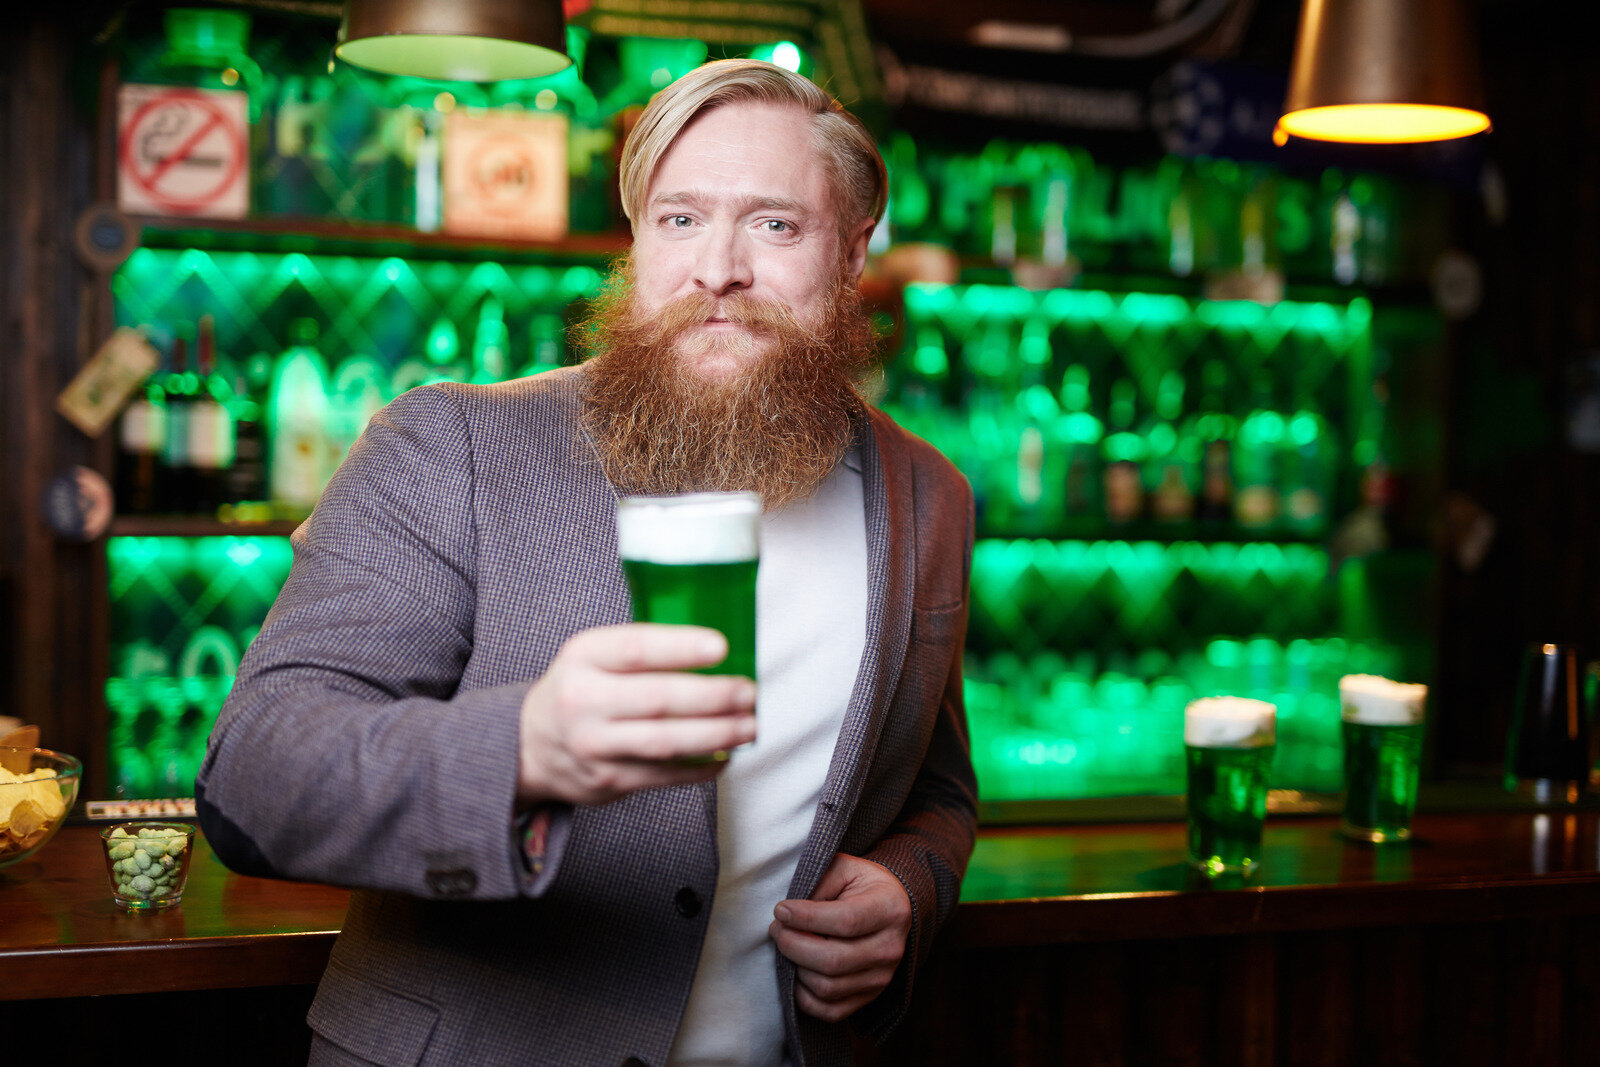 Does Alcohol help beards grow? — The Beard Awards